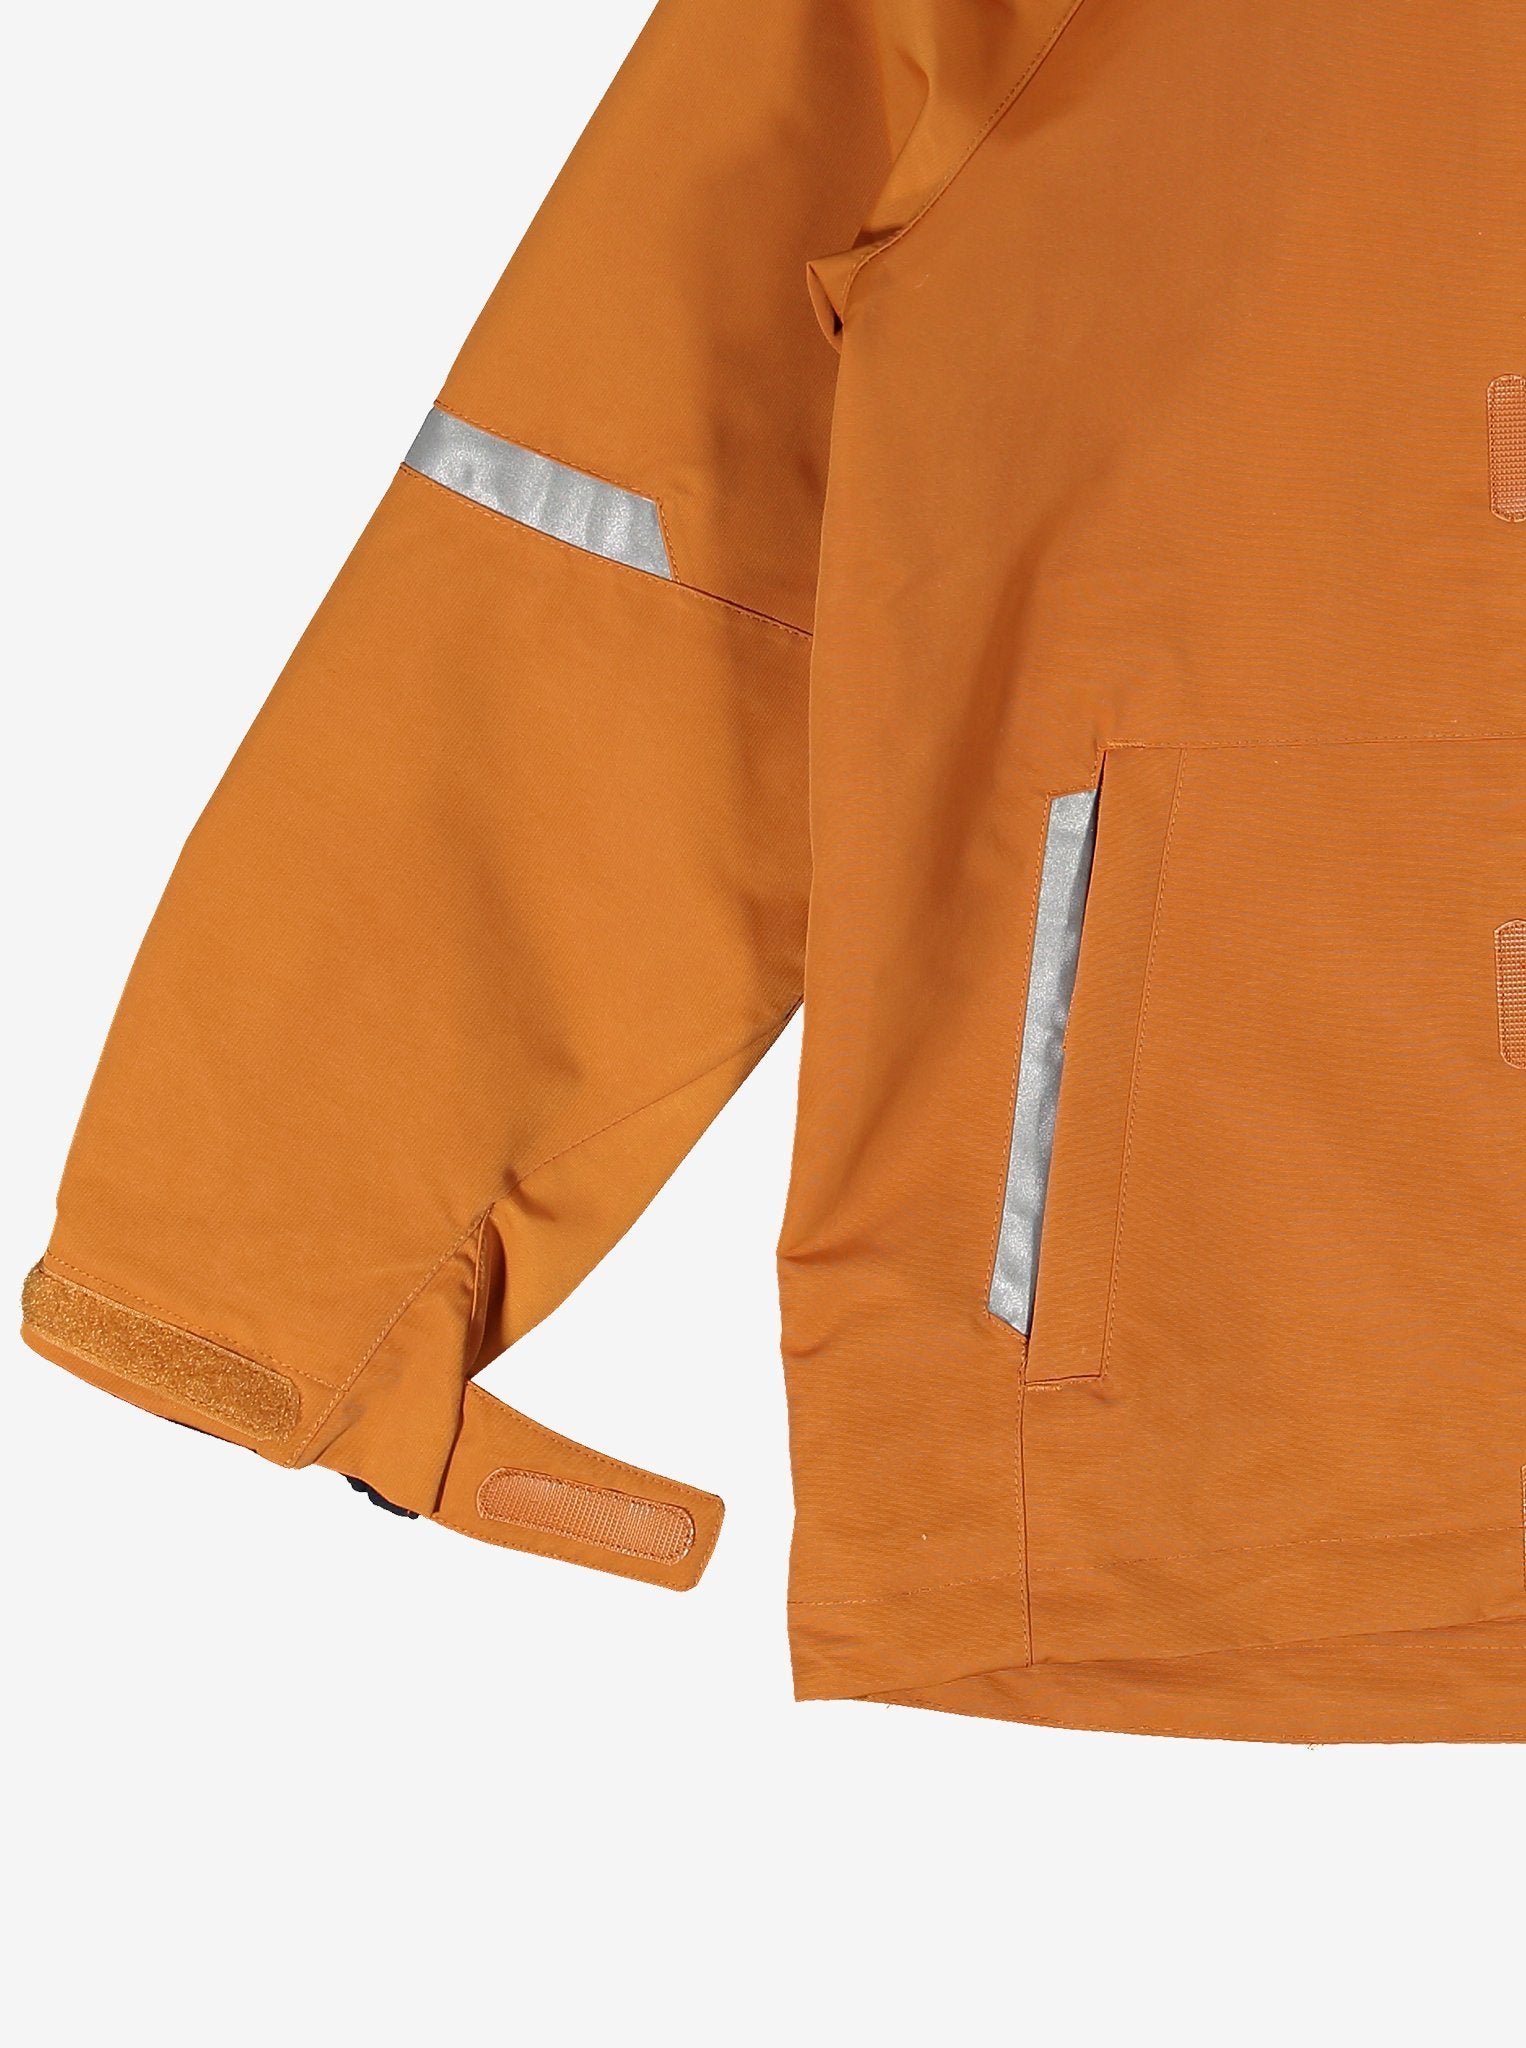 Orange Waterproof Kids Shell Jacket